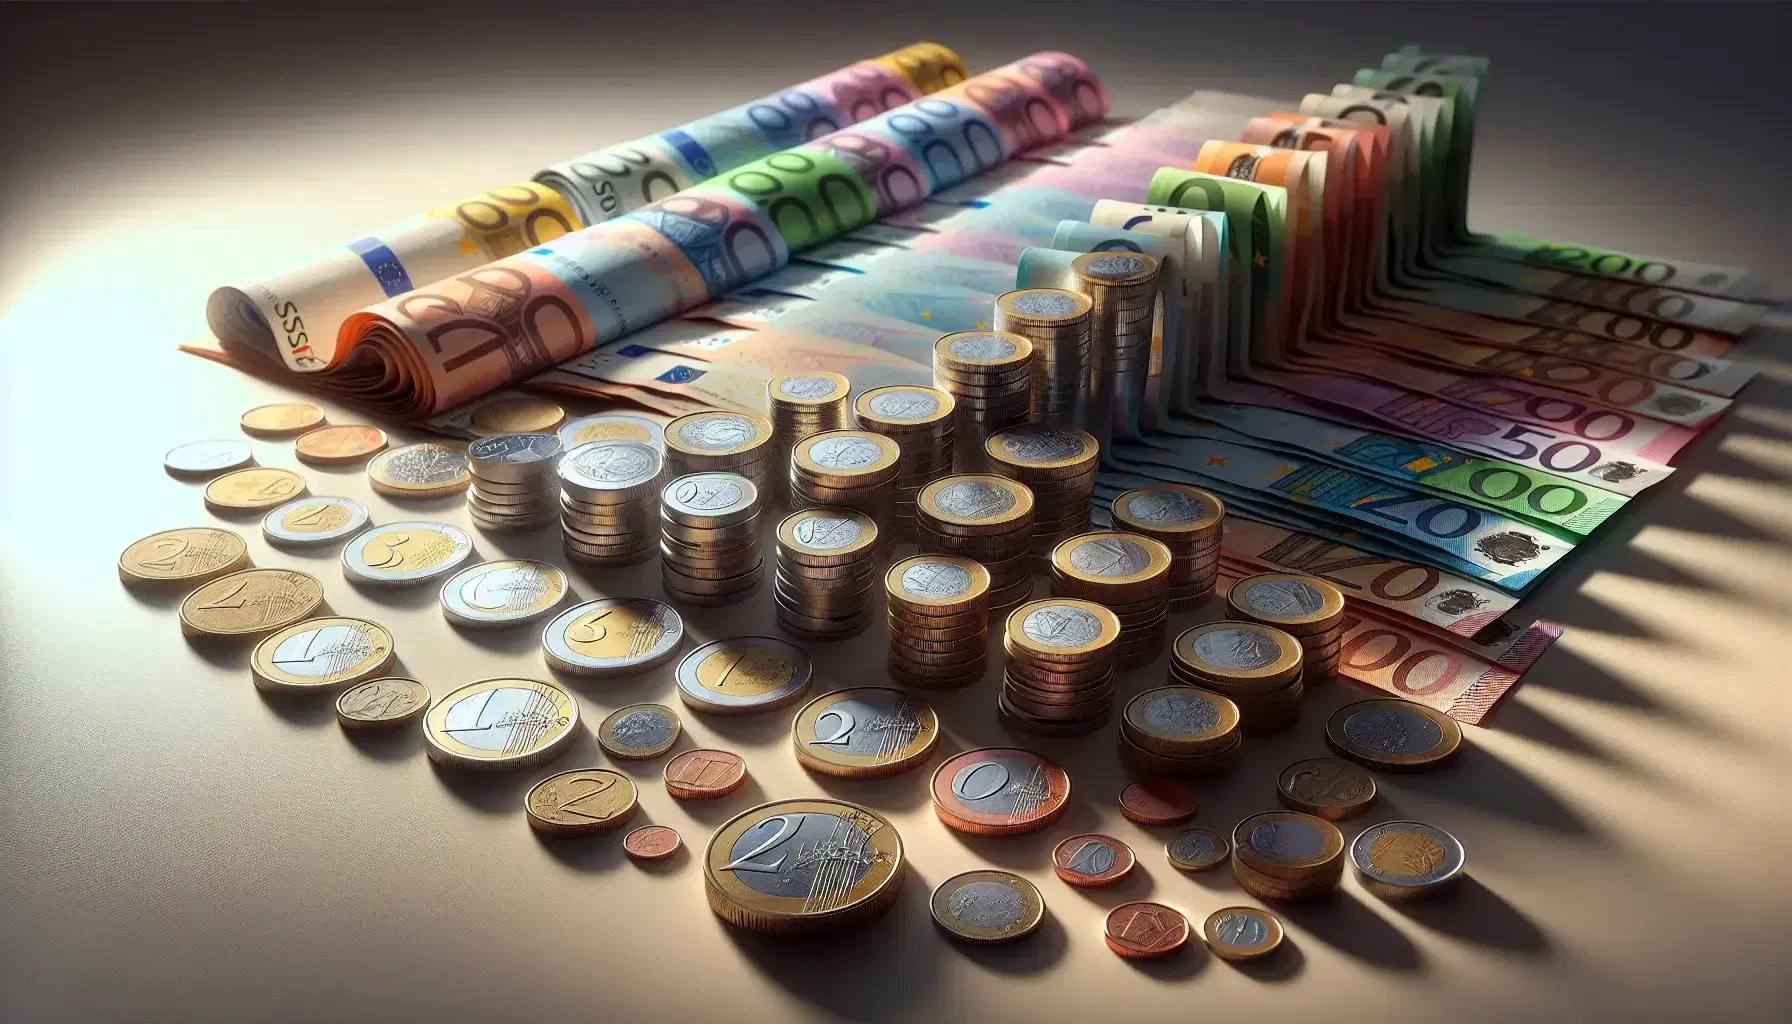 Monete in argento di varie dimensioni e banconote colorate piegate a ventaglio su superficie chiara, simboleggiano valori crescenti in euro.